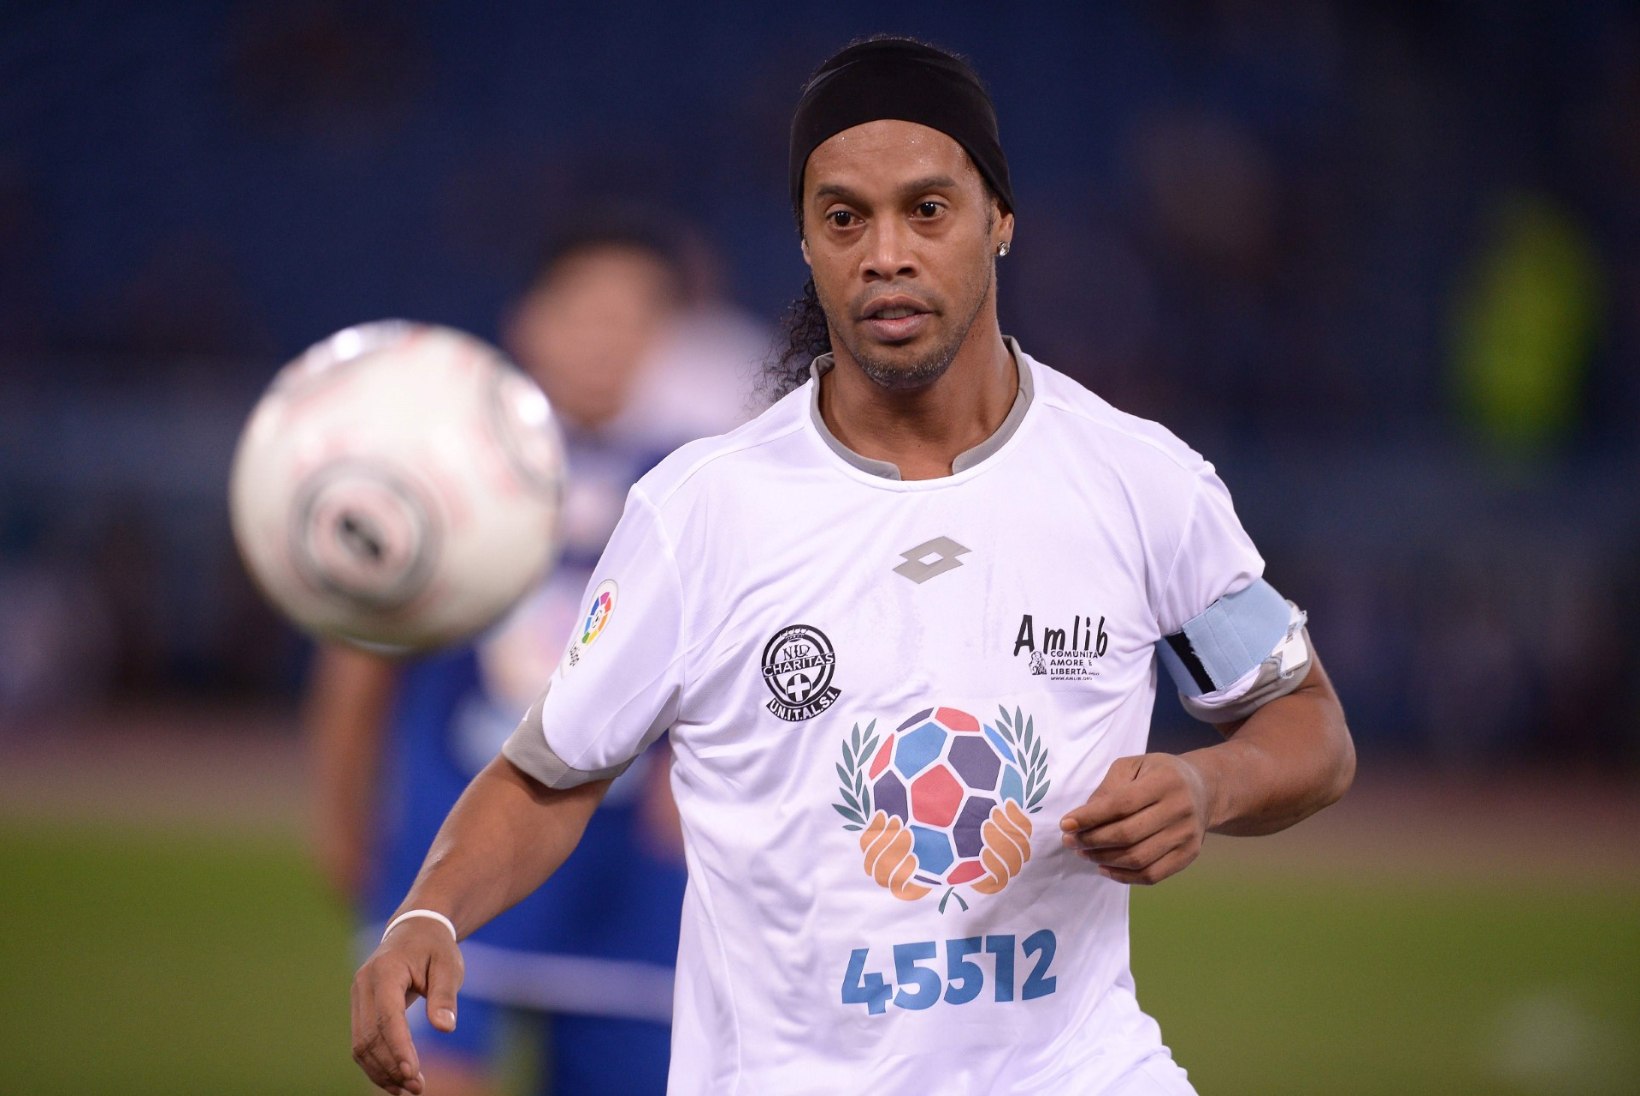 FOTOD | Legendaarne punt: Ronaldinho, Totti ja Maradona olid kõik korraga ühel jalgpalliväljakul